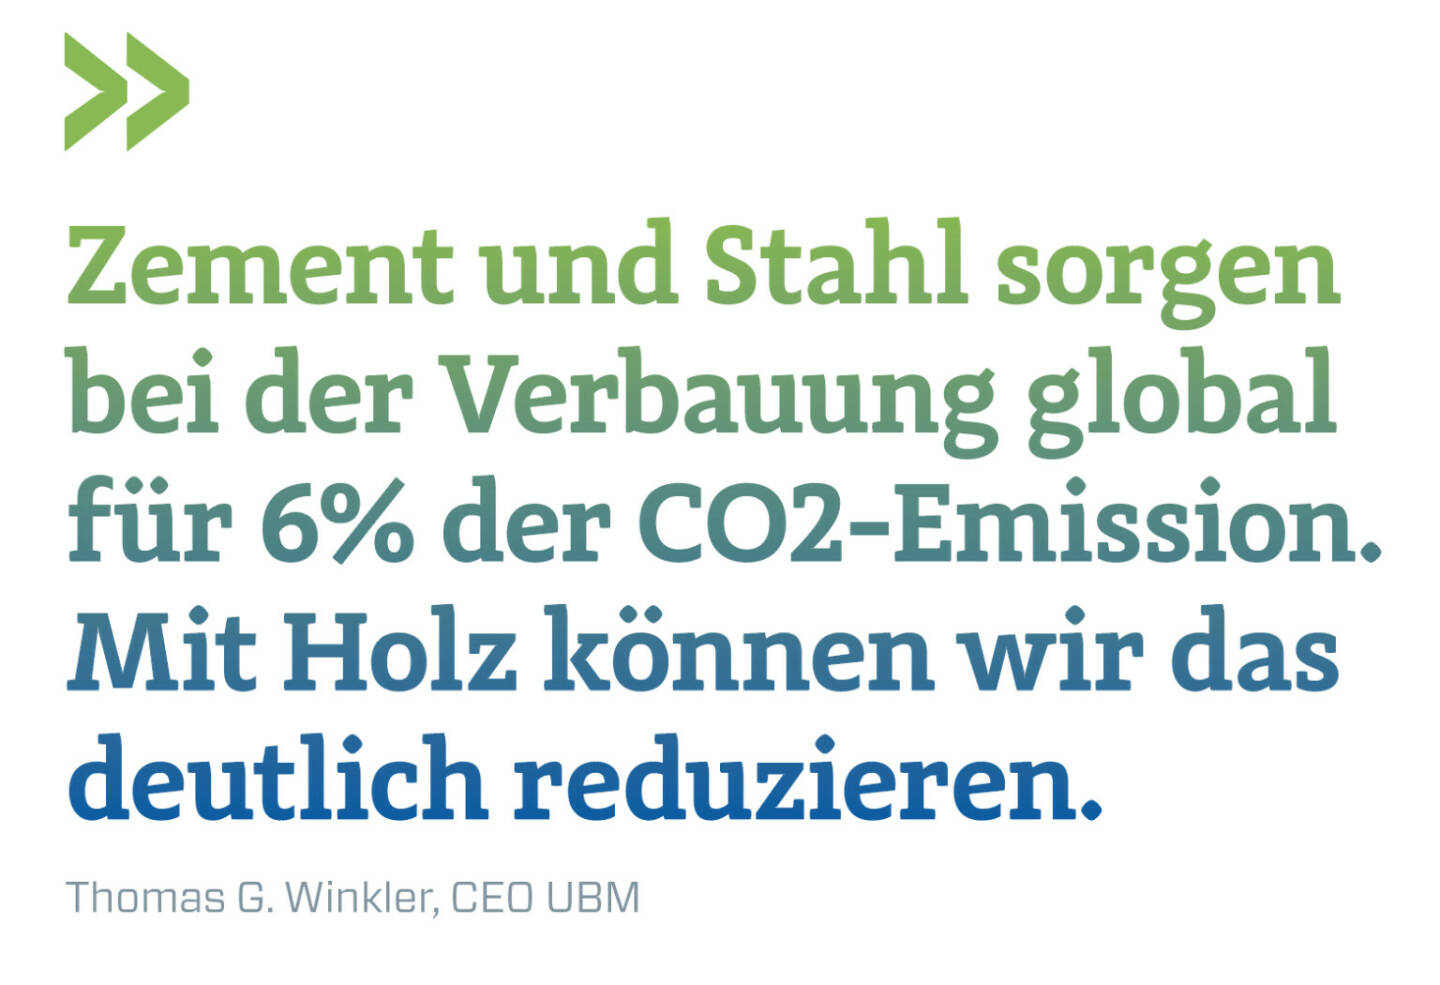 Zement und Stahl sorgen bei der Verbauung global für 6% der CO2-Emission. Mit Holz können wir das deutlich reduzieren.
Thomas G. Winkler, CEO UBM 